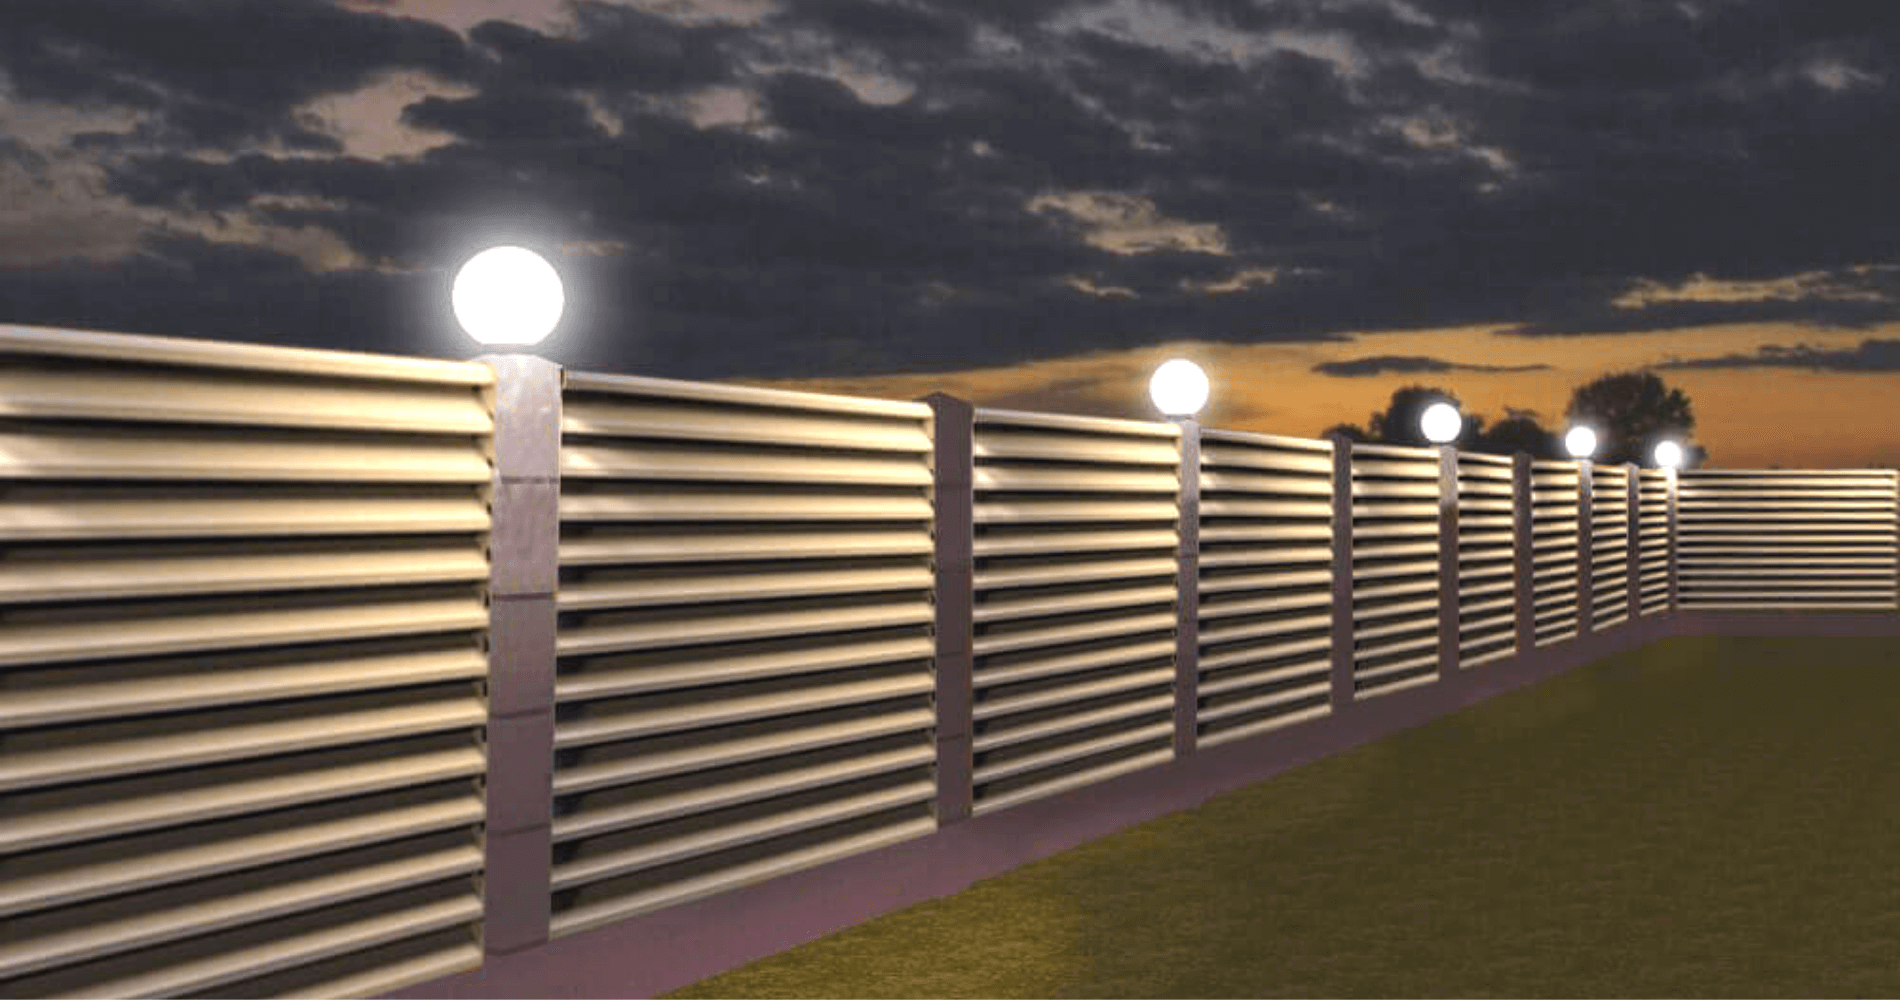 Подсветка забора загородного дома: выбор и монтаж светильников на столбы